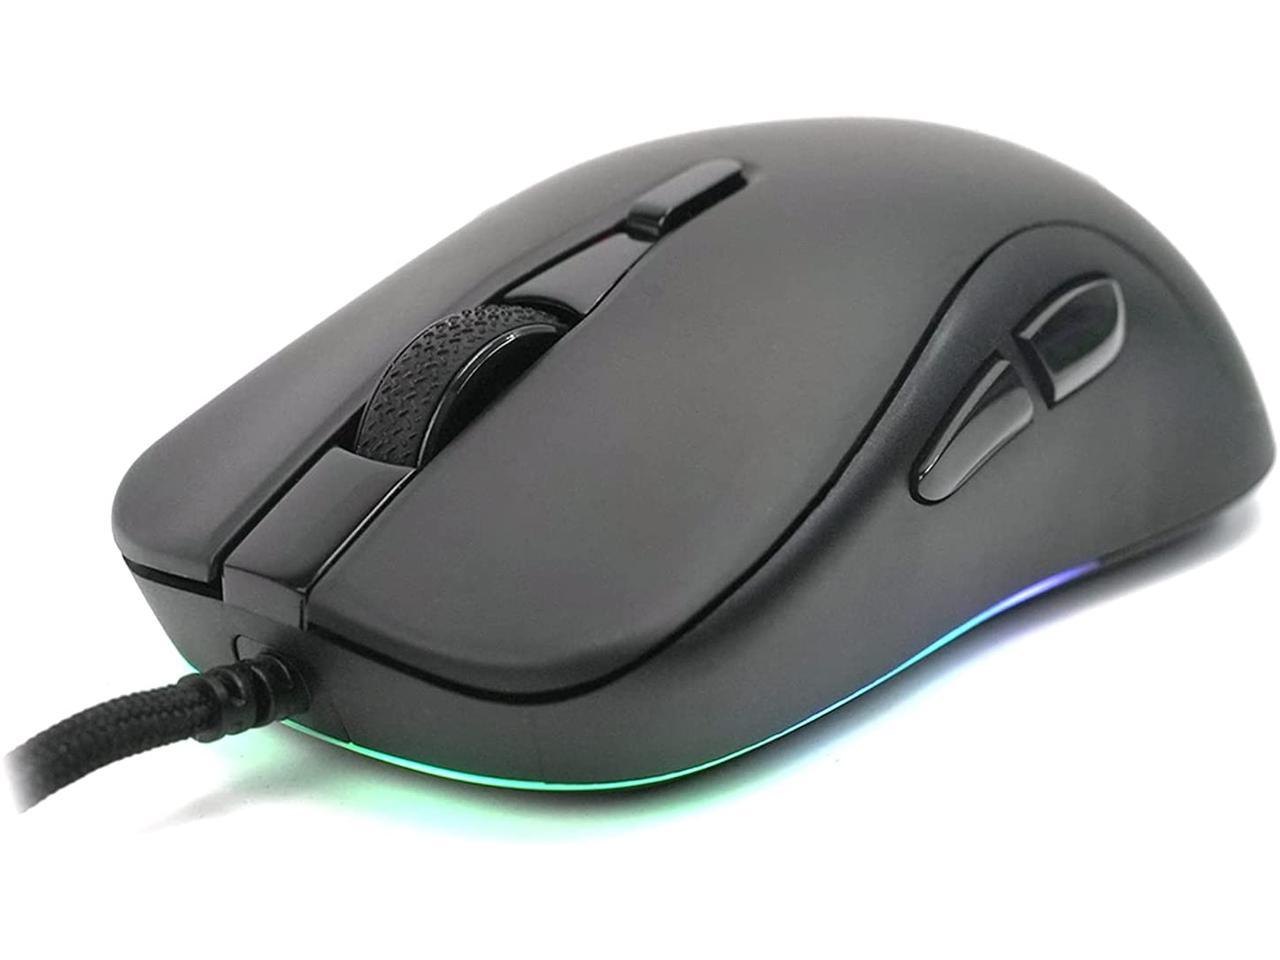 Gamesense Meta Lightweight Wired Gaming Mouse - PixArt 3360